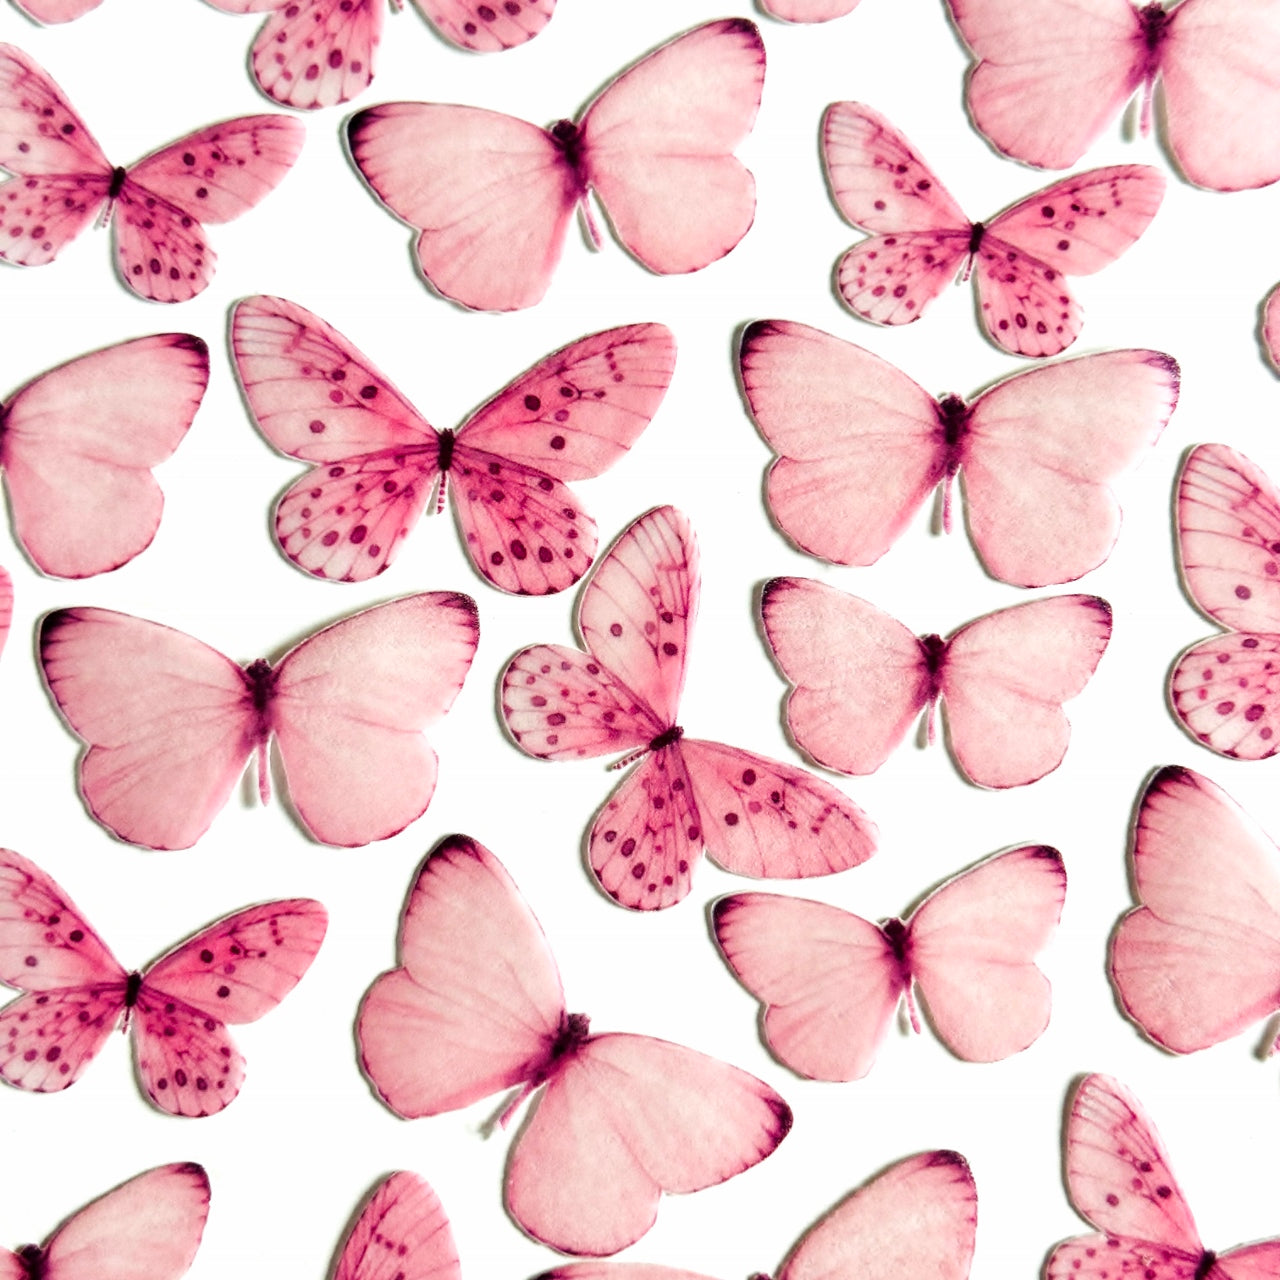 Βρώσιμες πεταλούδες ροζ 36 τεμ.